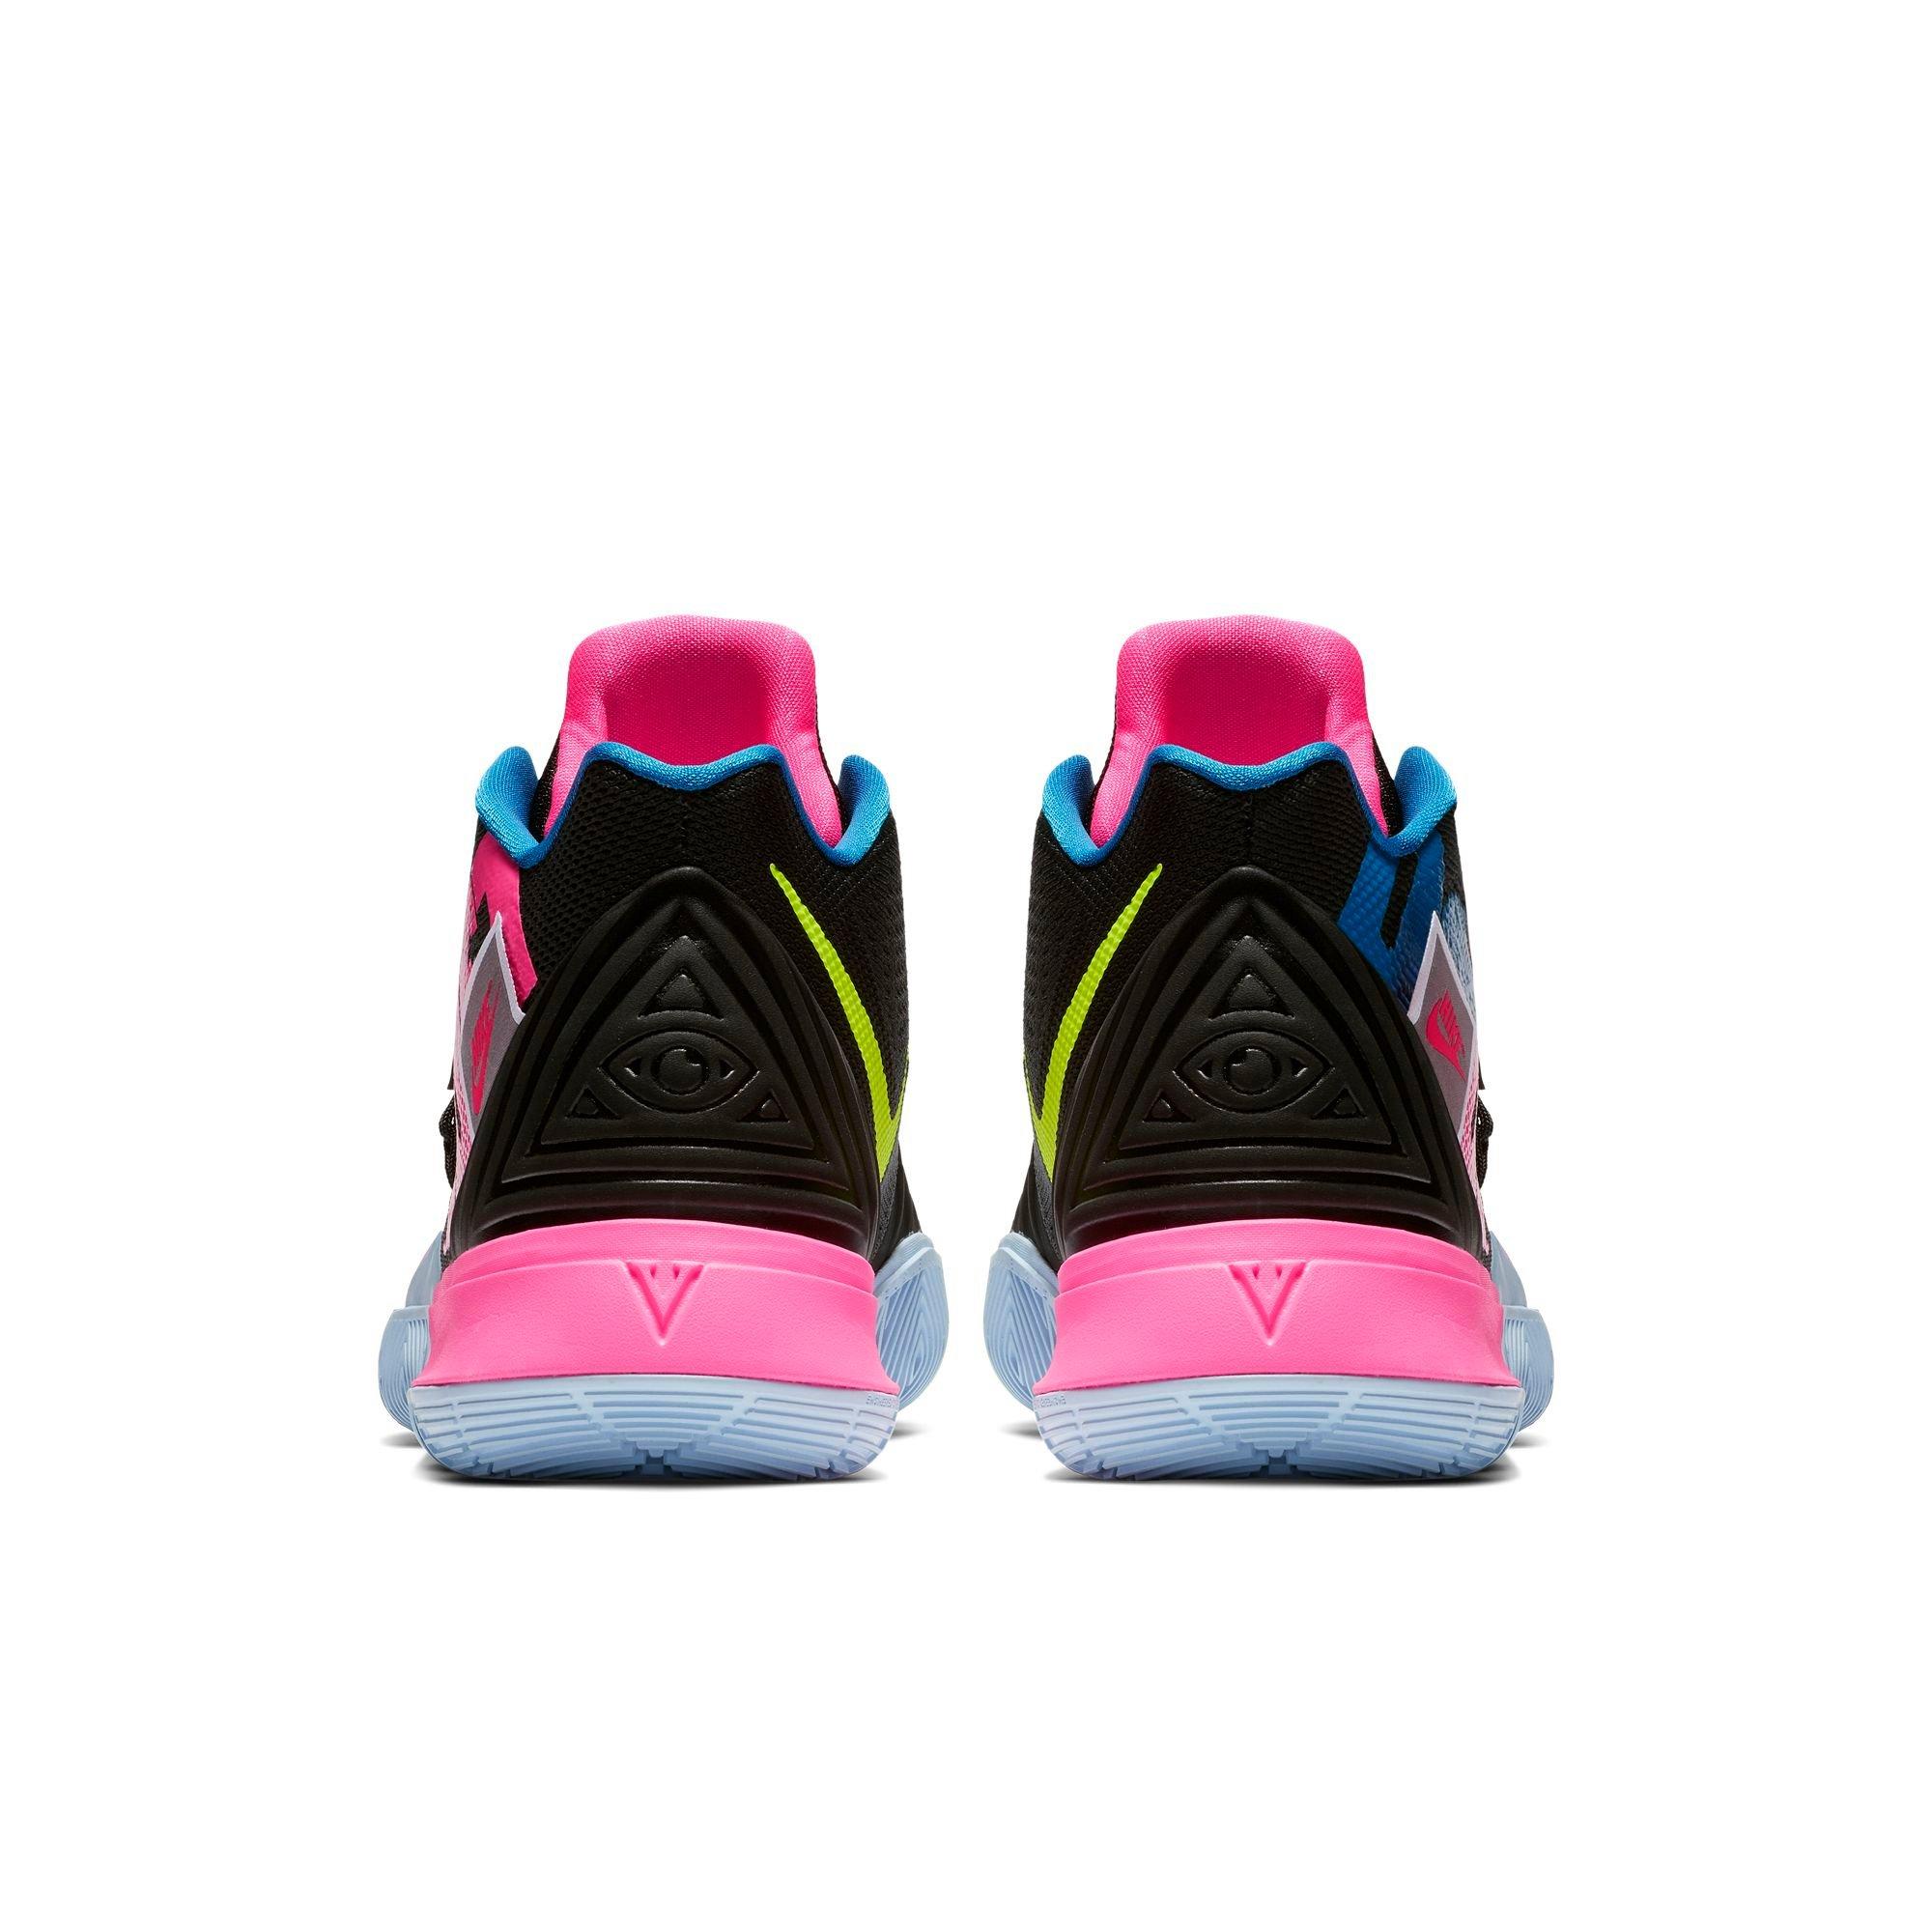 Shop Nike Kyrie 5 Bandulu EP Women 's Basketball Shoes